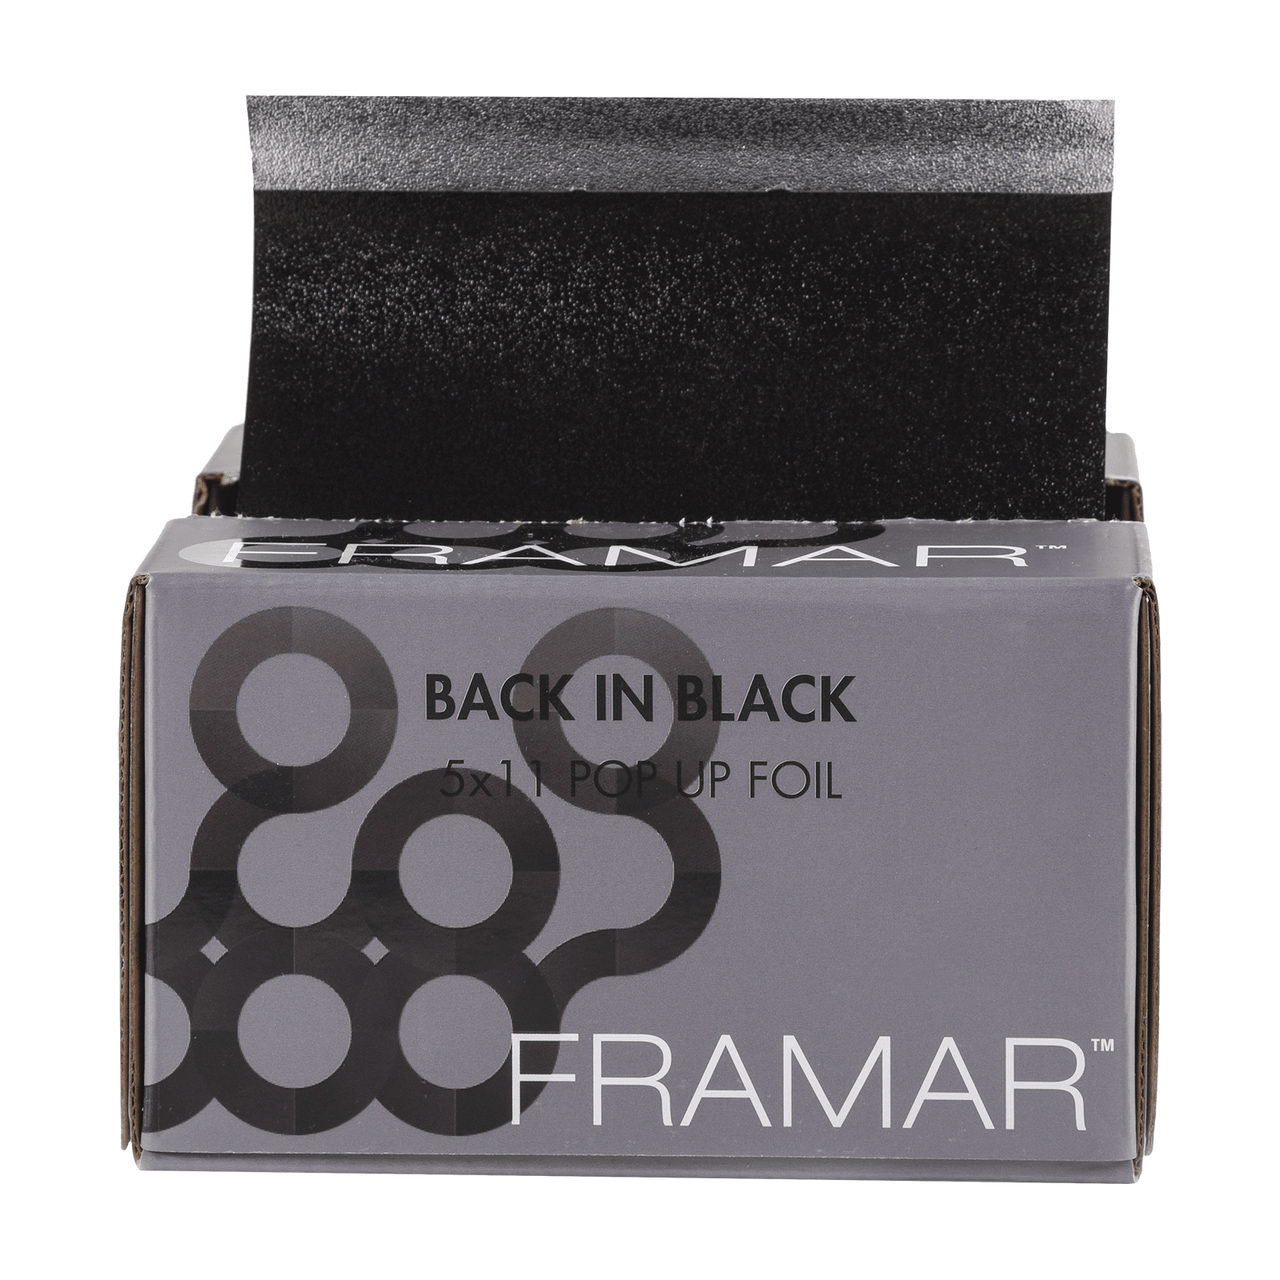 Framar Back In Black Pop Up Foil - 500 Sheets 1 Each